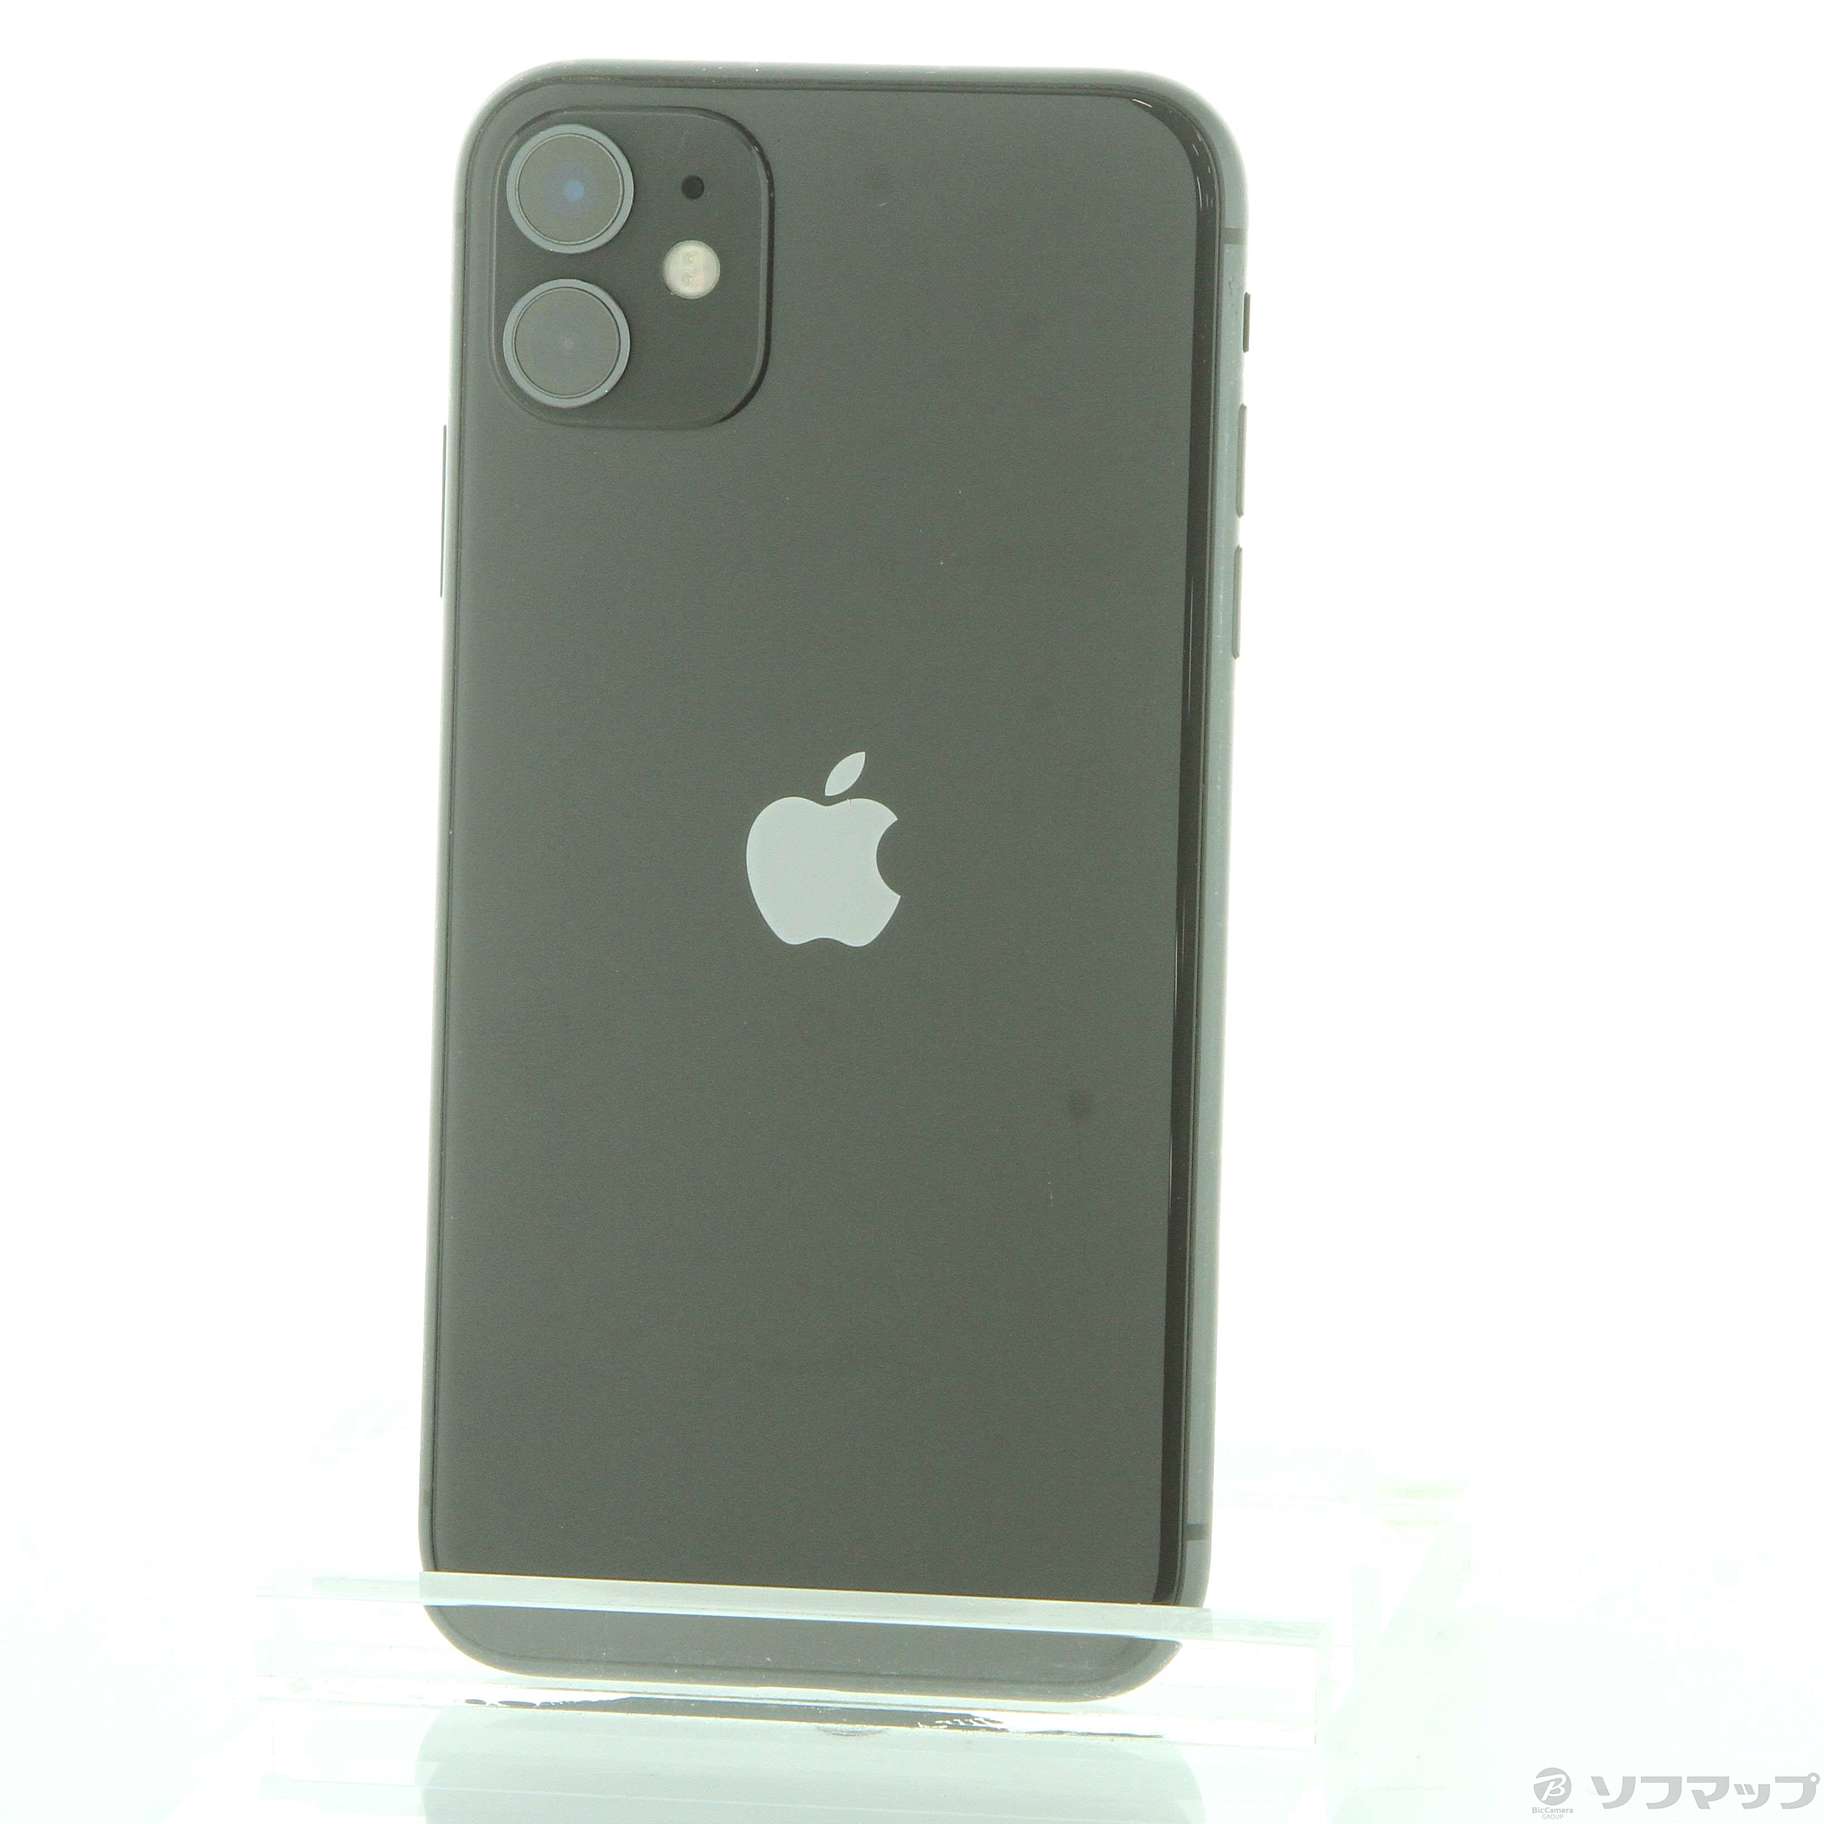 SIMフリー iPhone 11 64GB MWLT2J/A - スマートフォン/携帯電話